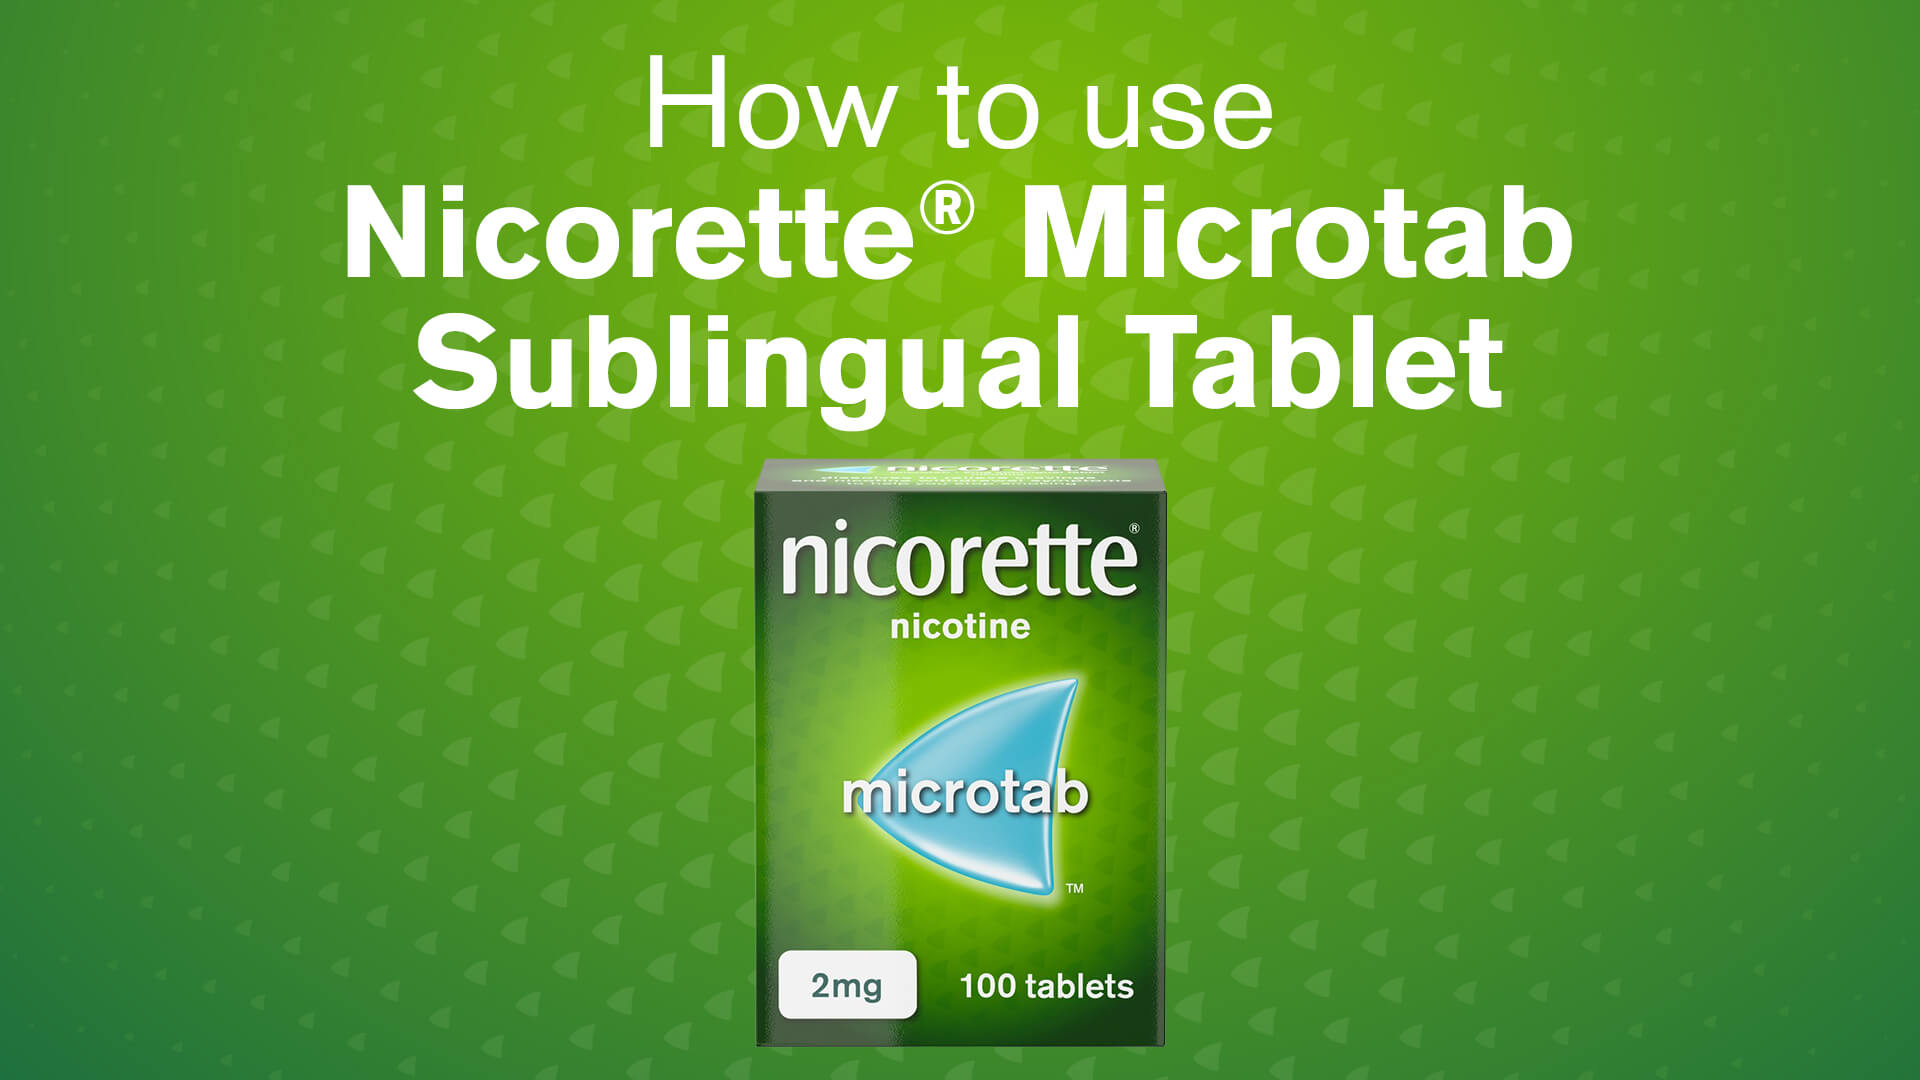 Nicorette® Microtab